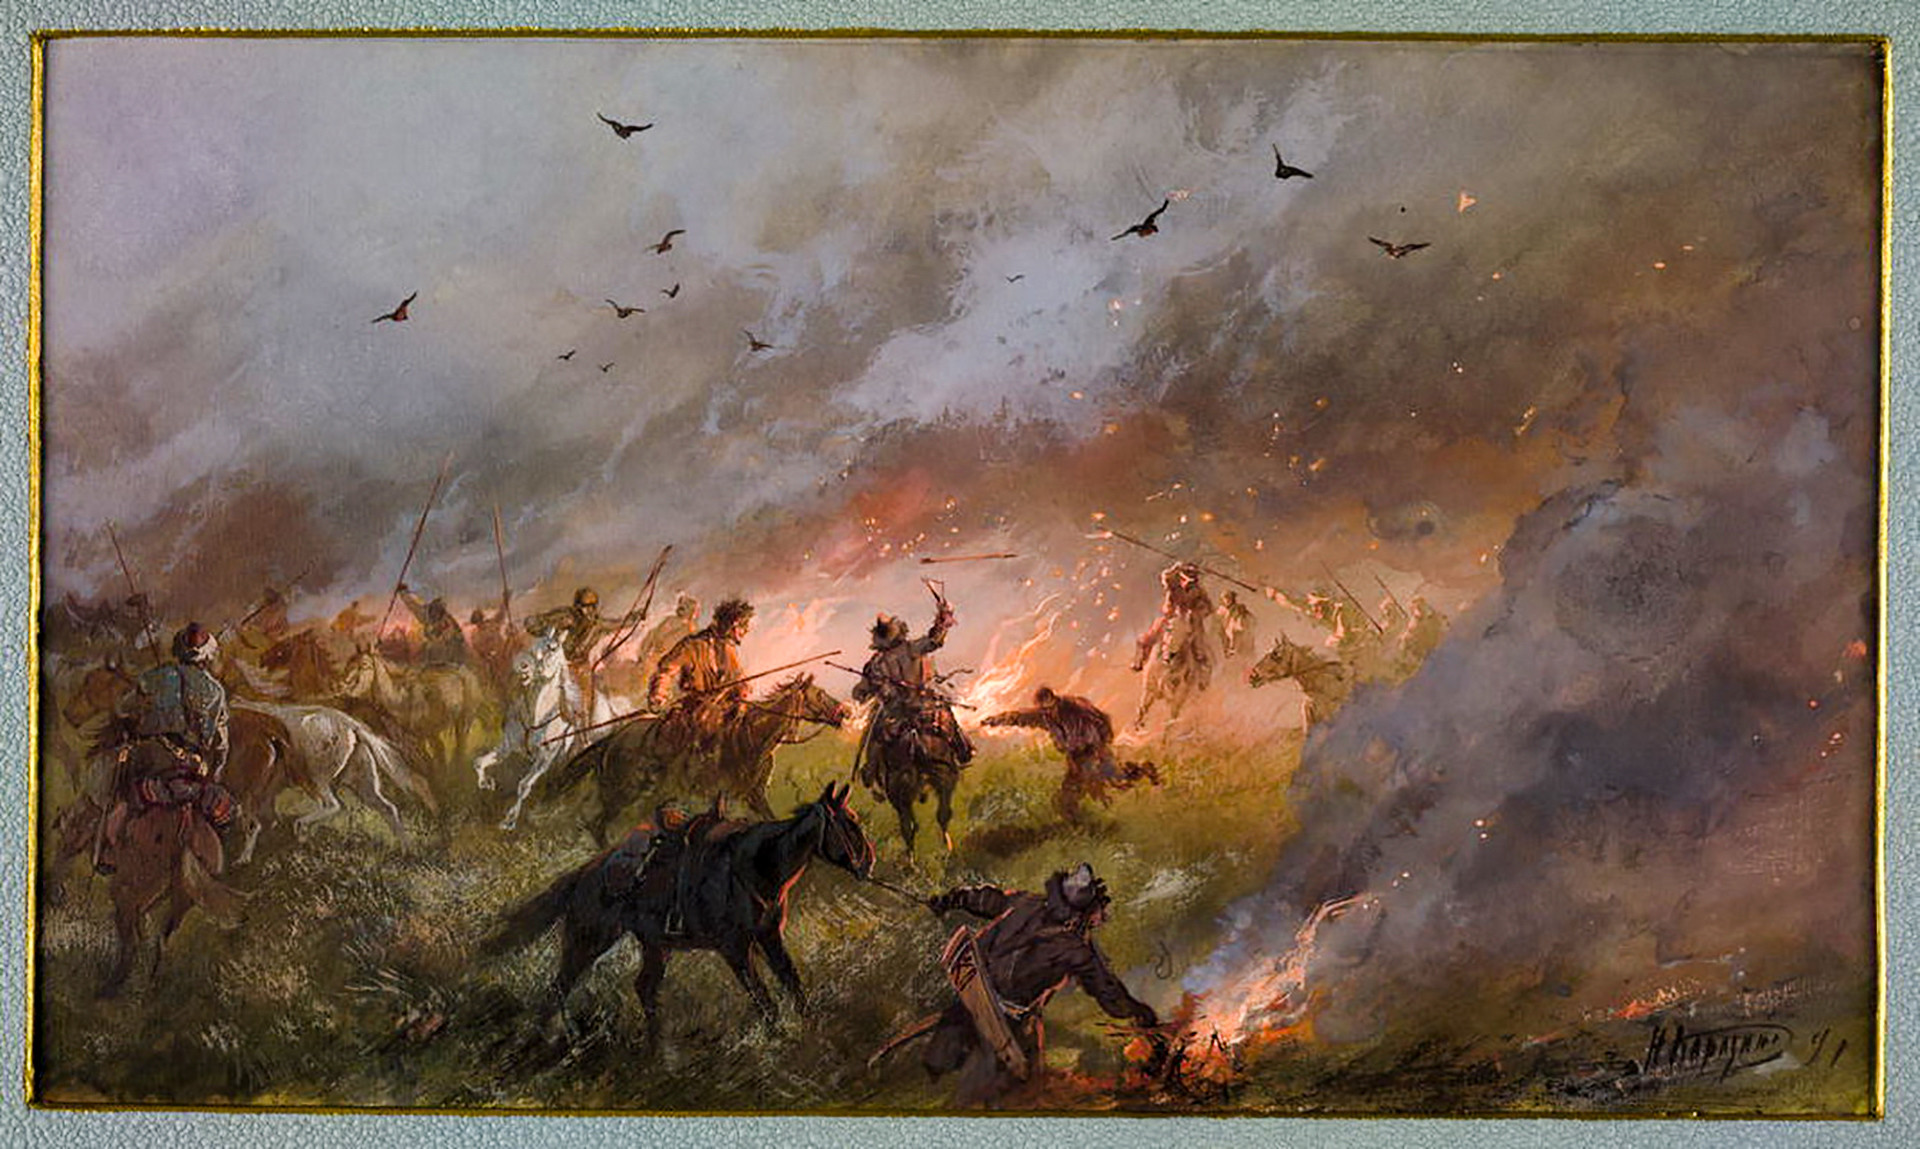 The Pugachev's uprising in Siberia by Nikolai Karazin.